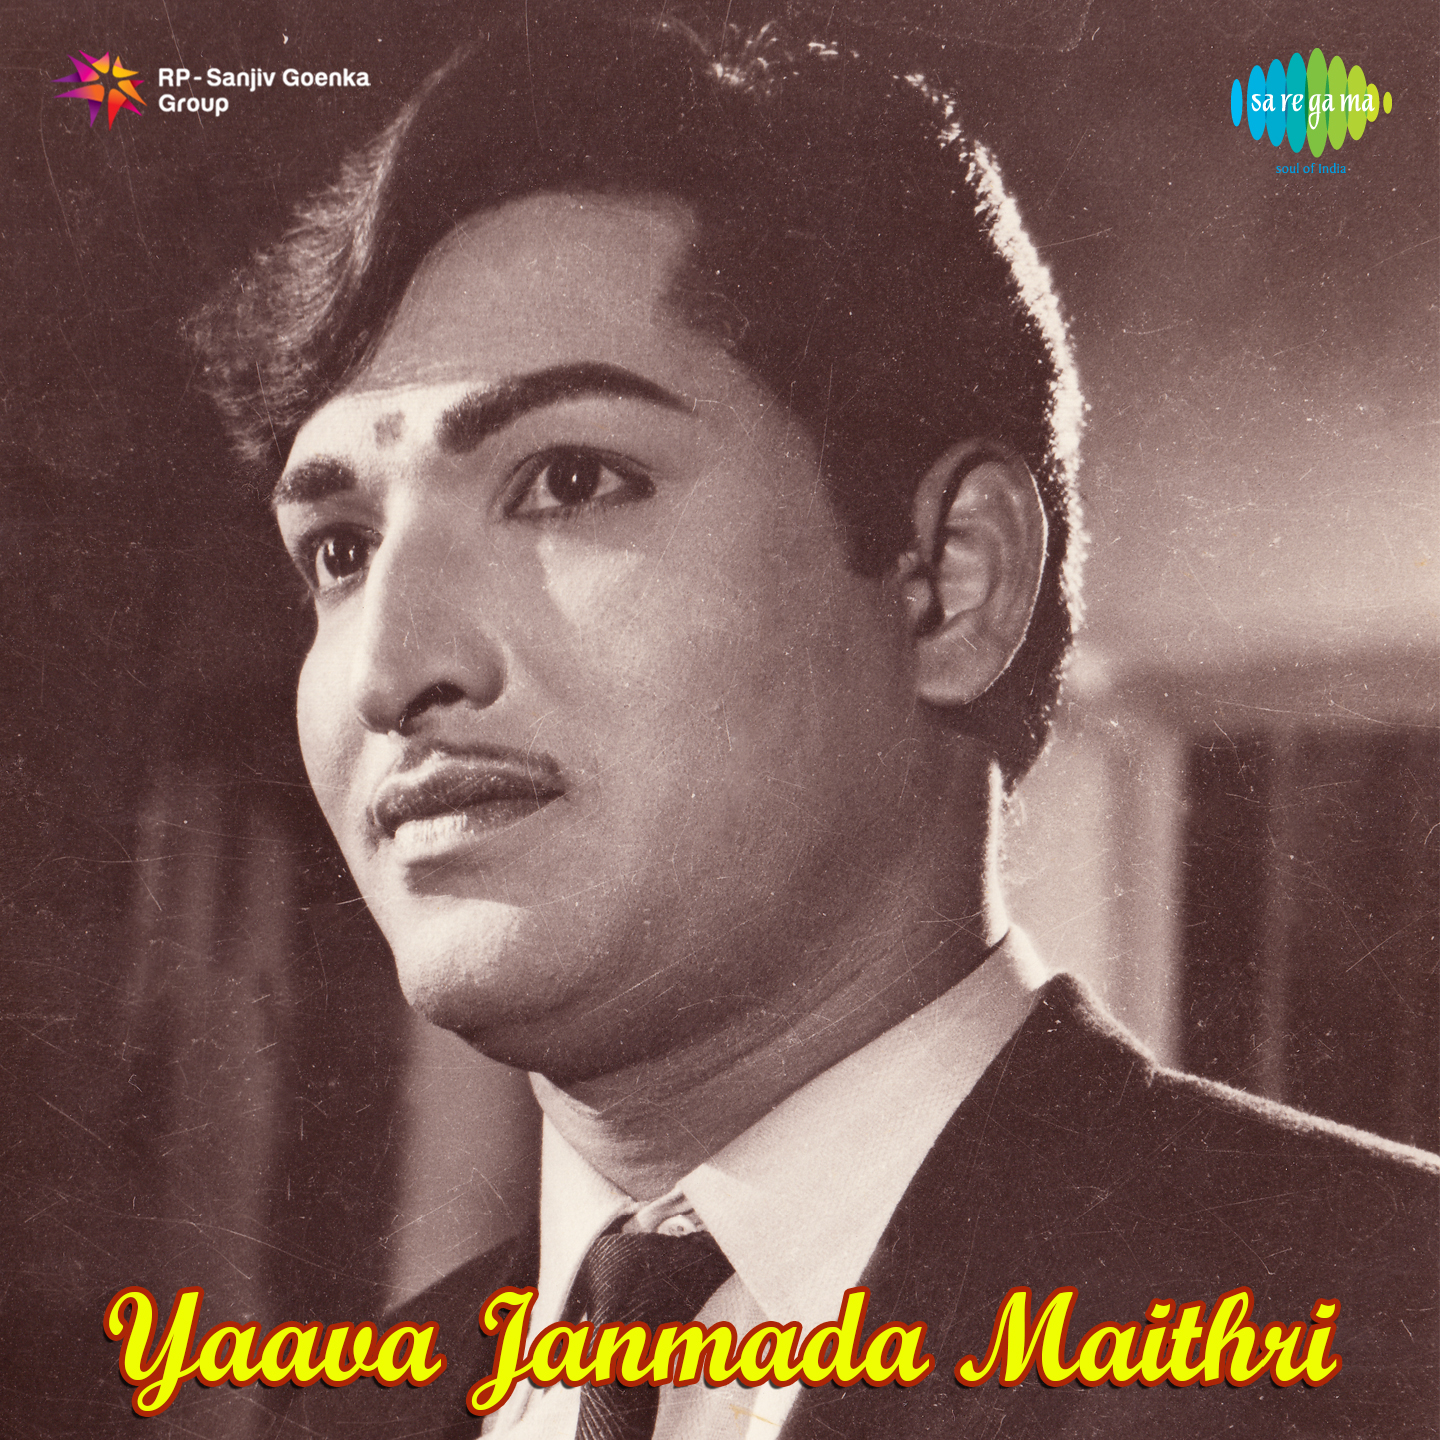 Yaava Janmada Maithri